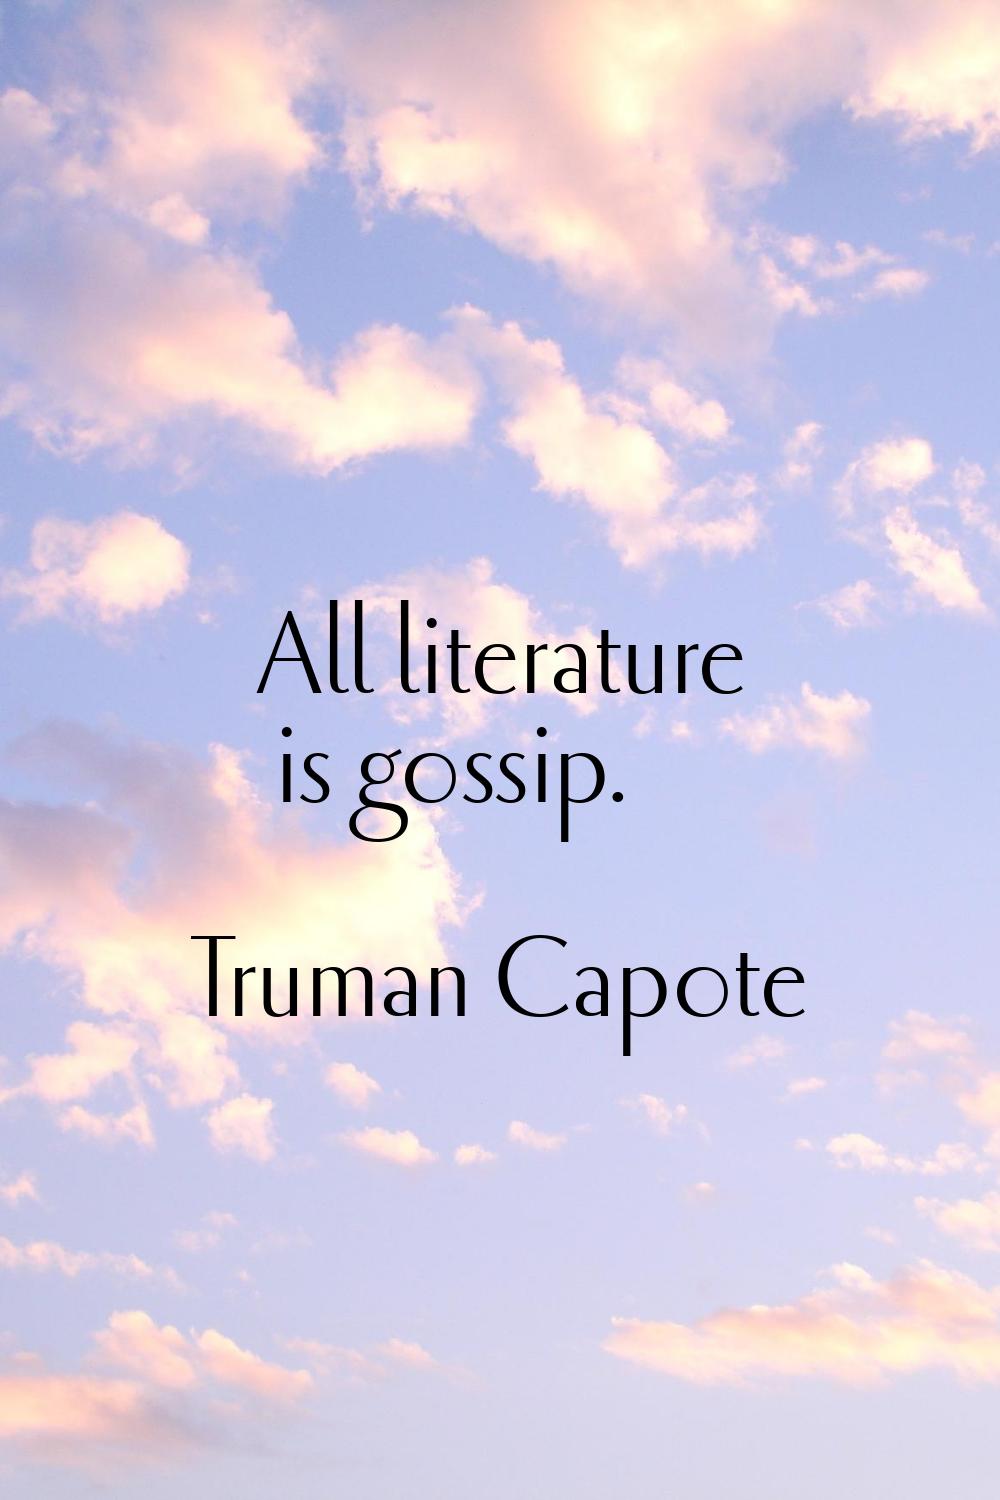 All literature is gossip.